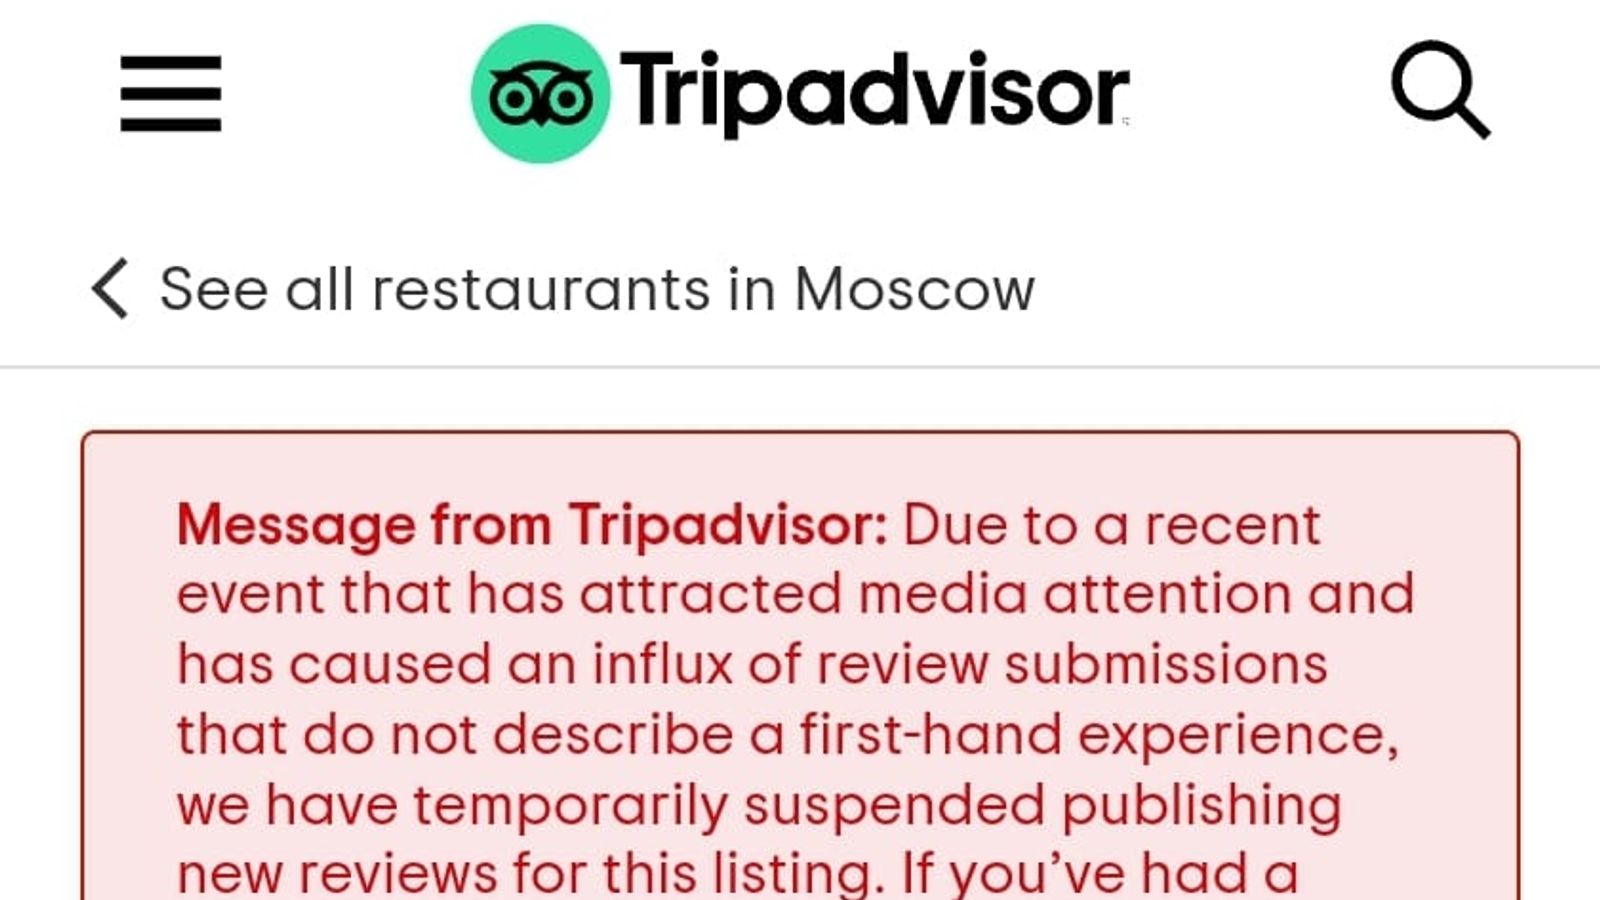 TripAdvisor reviews